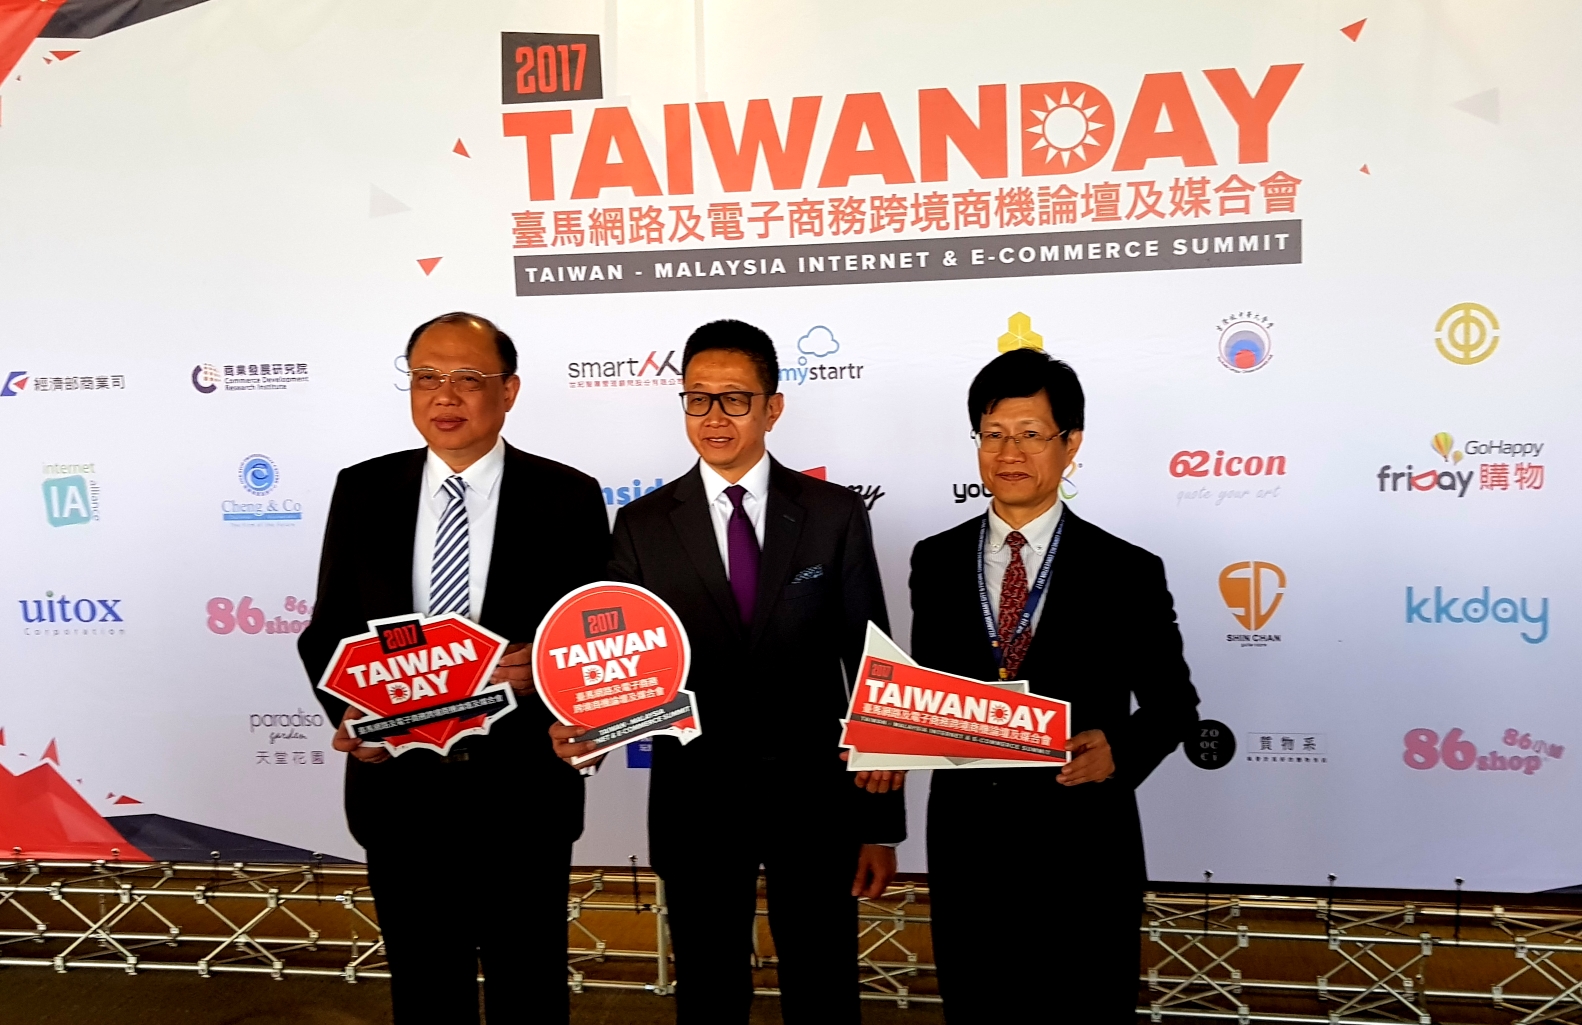 【新聞照片2】由經濟部商業司與商研院所舉辦的「2017 Taiwan Day臺馬網路及電子商務跨境商機論壇及媒合會」即日起盛大開幕。